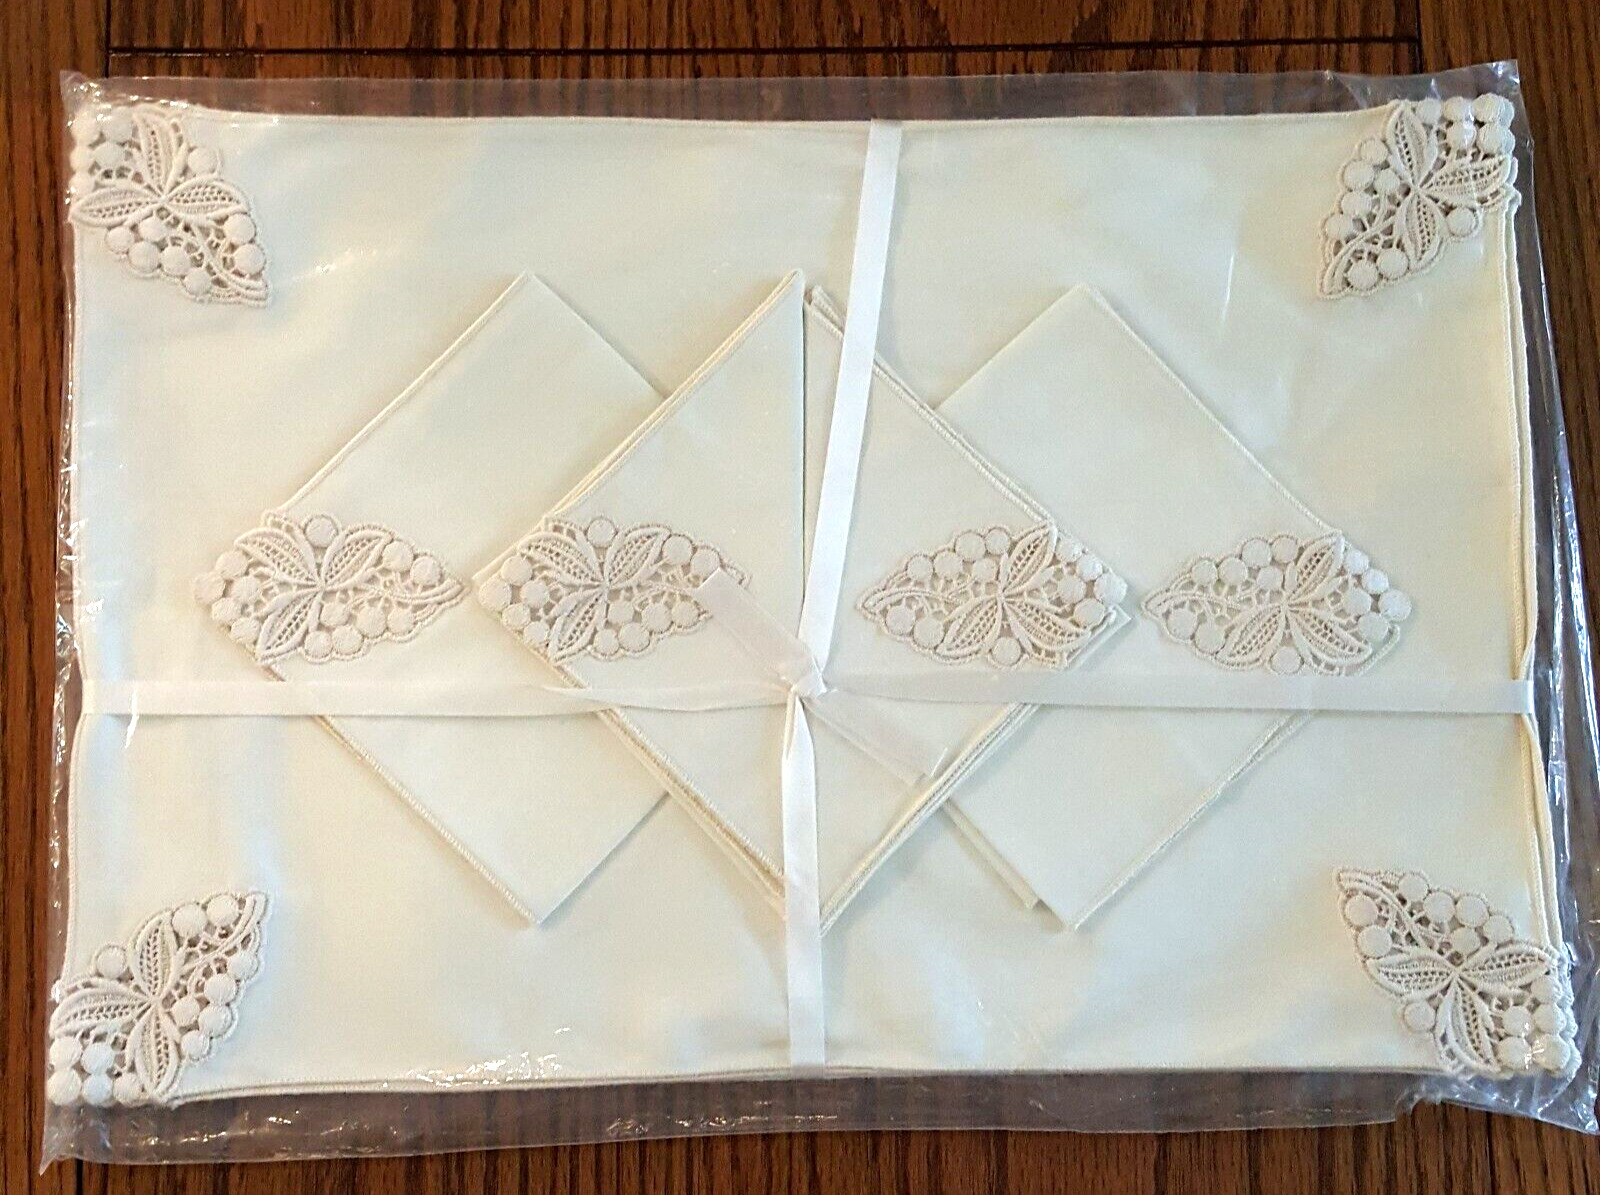 VTG Elegant Set of Embroidered Placemats and Napkins Ecru Beige Set of 4 NEW